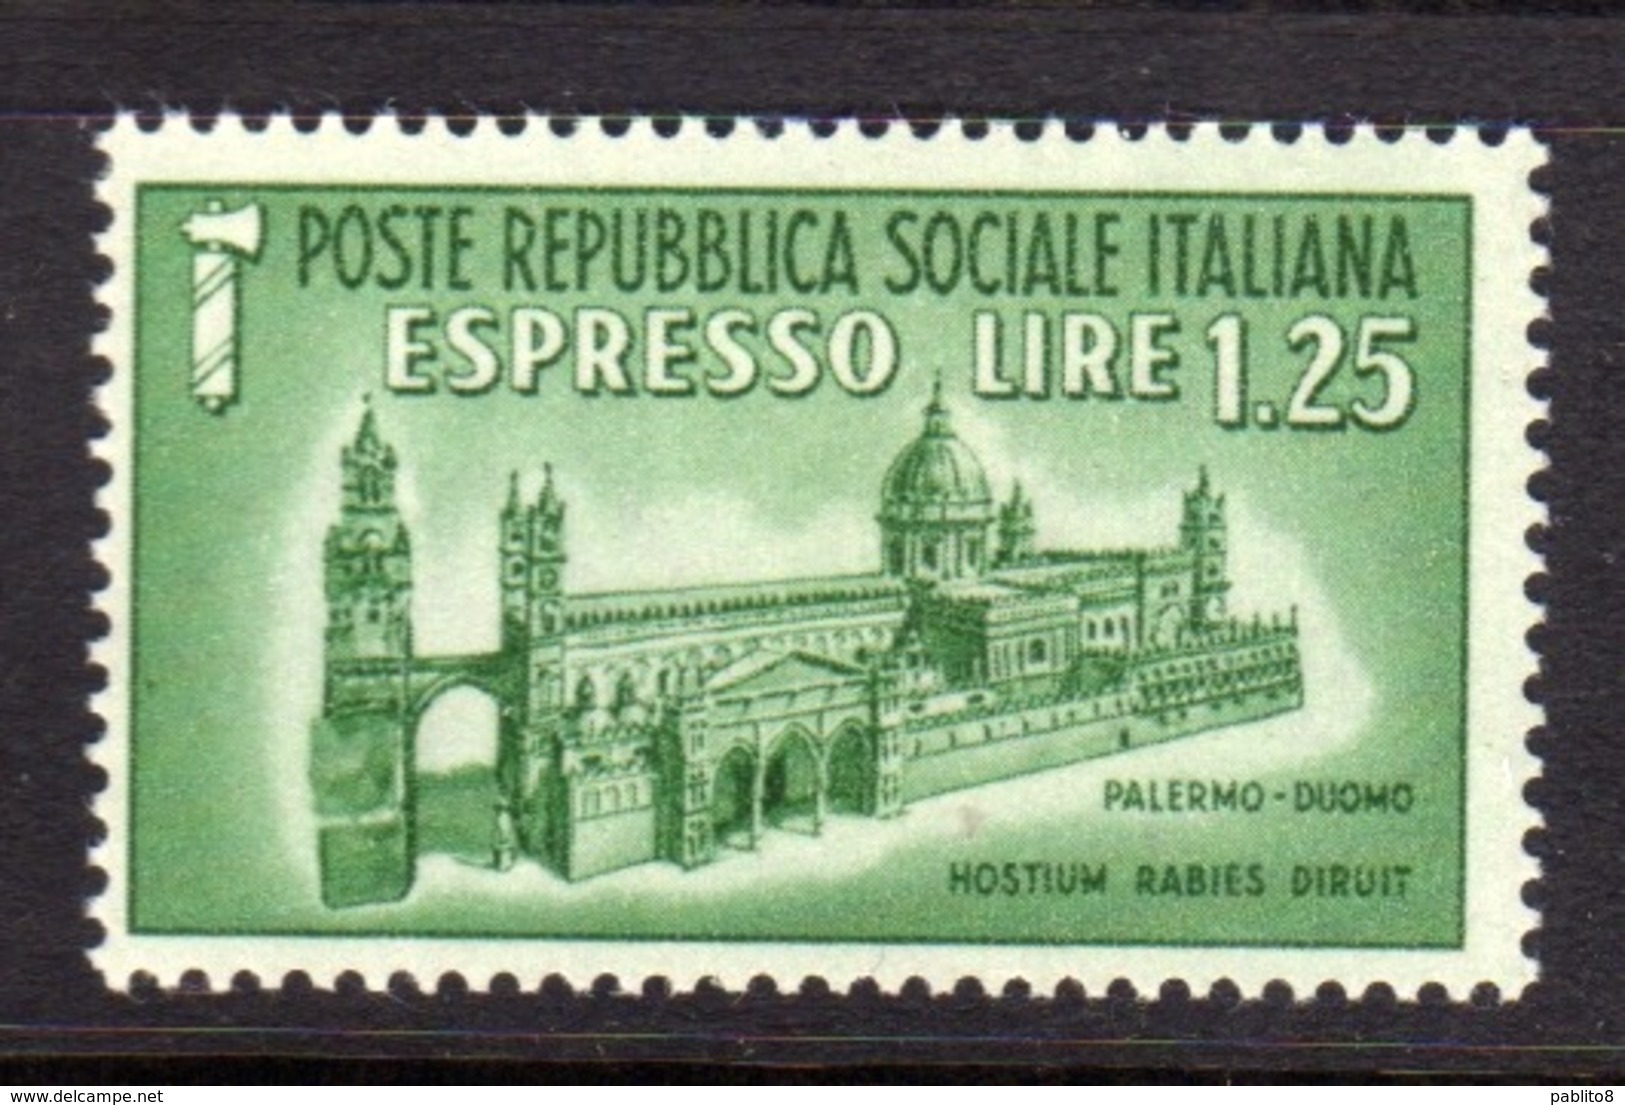 ITALIA REGNO ITALY KINGDOM REPUBBLICA SOCIALE RSI 1944 ESPRESSO SPECIAL DELIVERY RSI DUOMO DI PALERMO LIRE 1,25 MNH - Exprespost